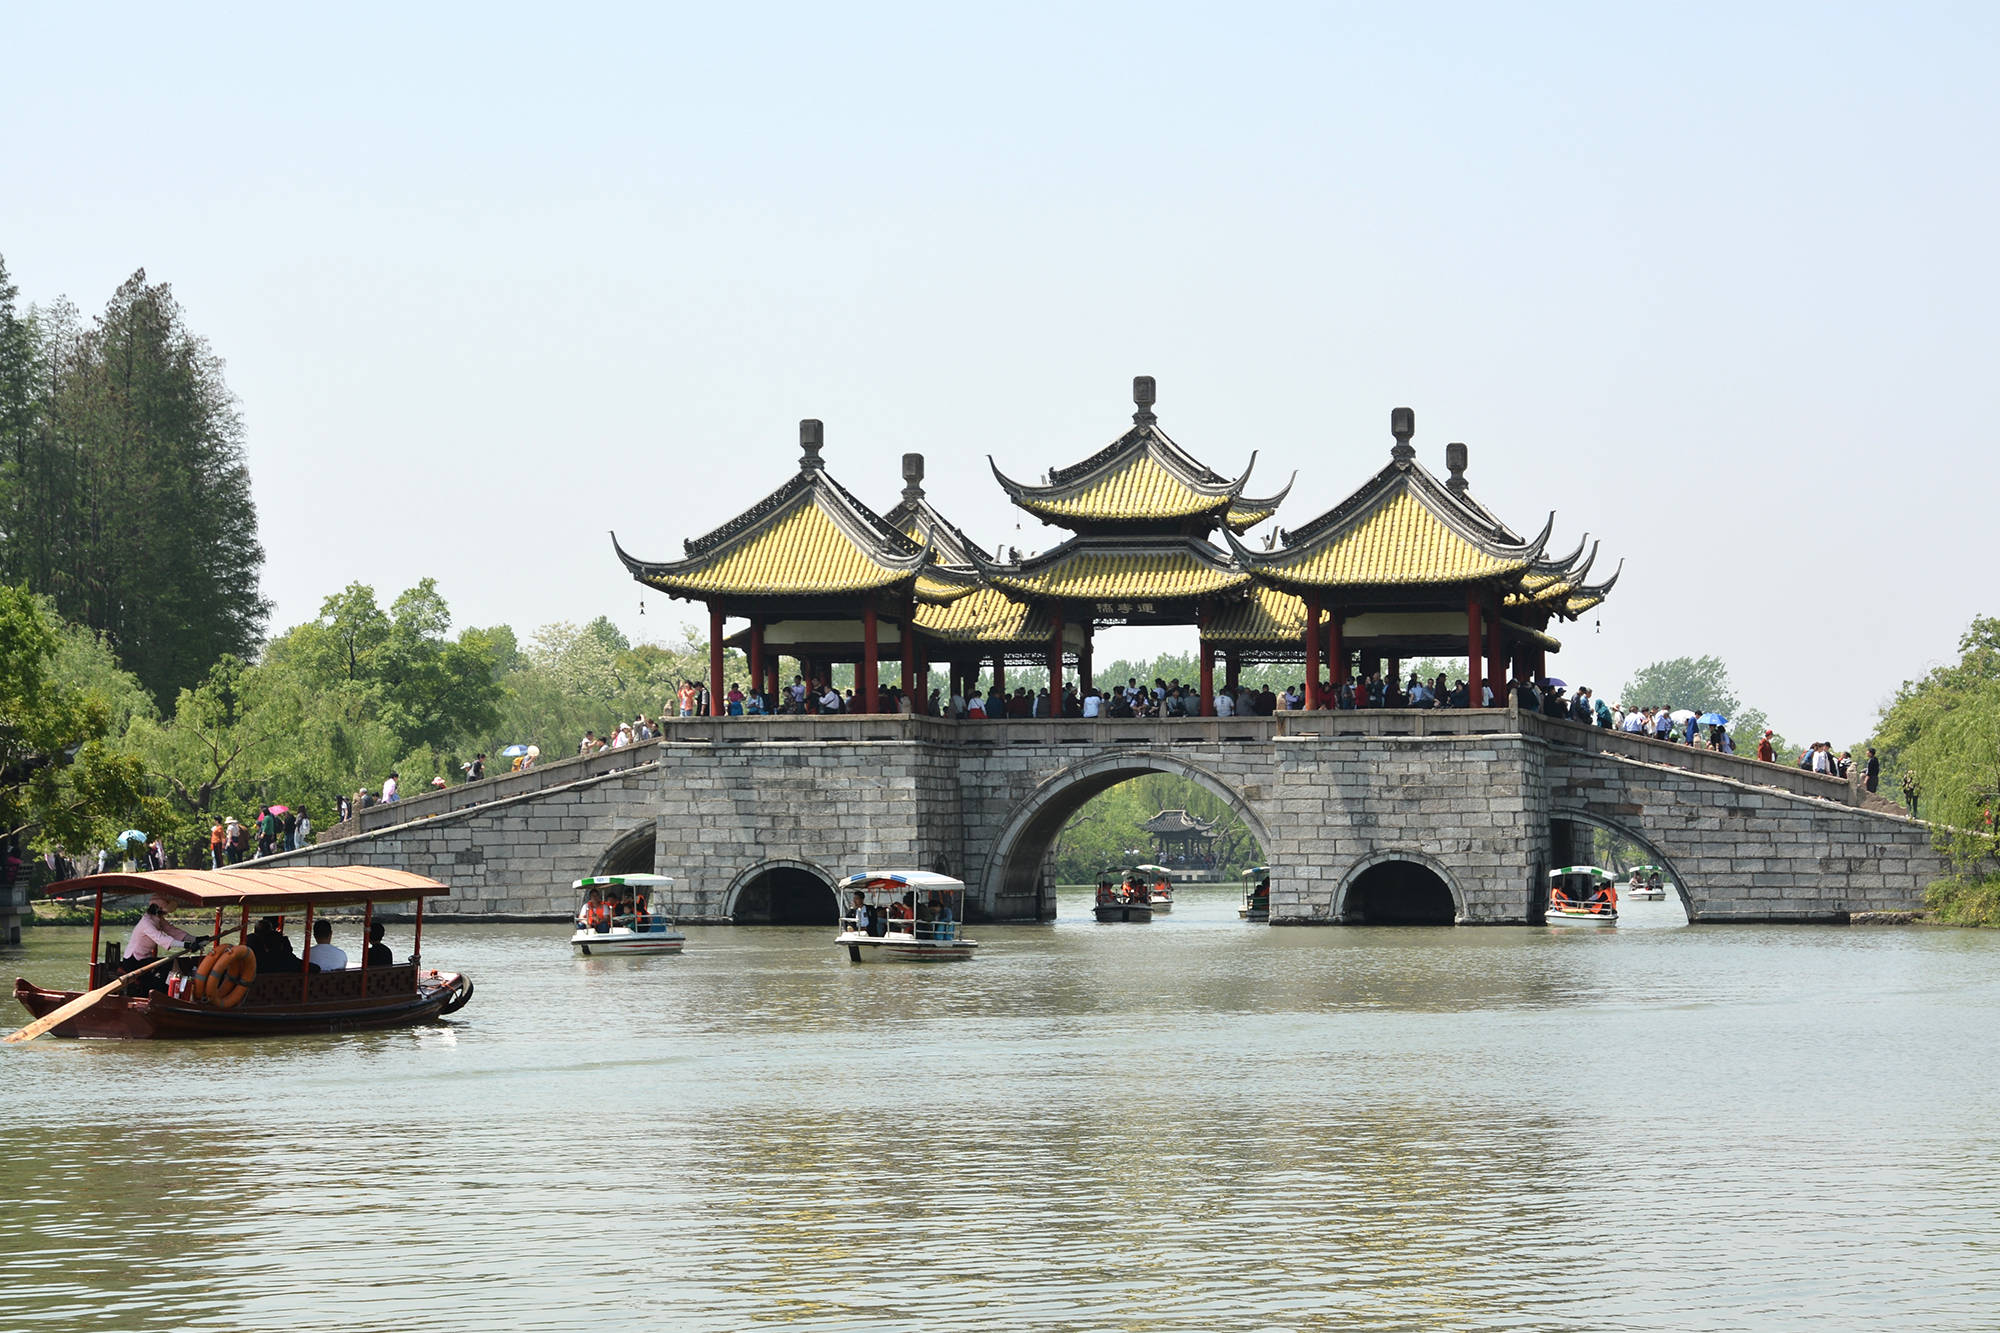 原创扬州有一座中国最美的桥,仿照北京十七孔桥而建,景色美如画